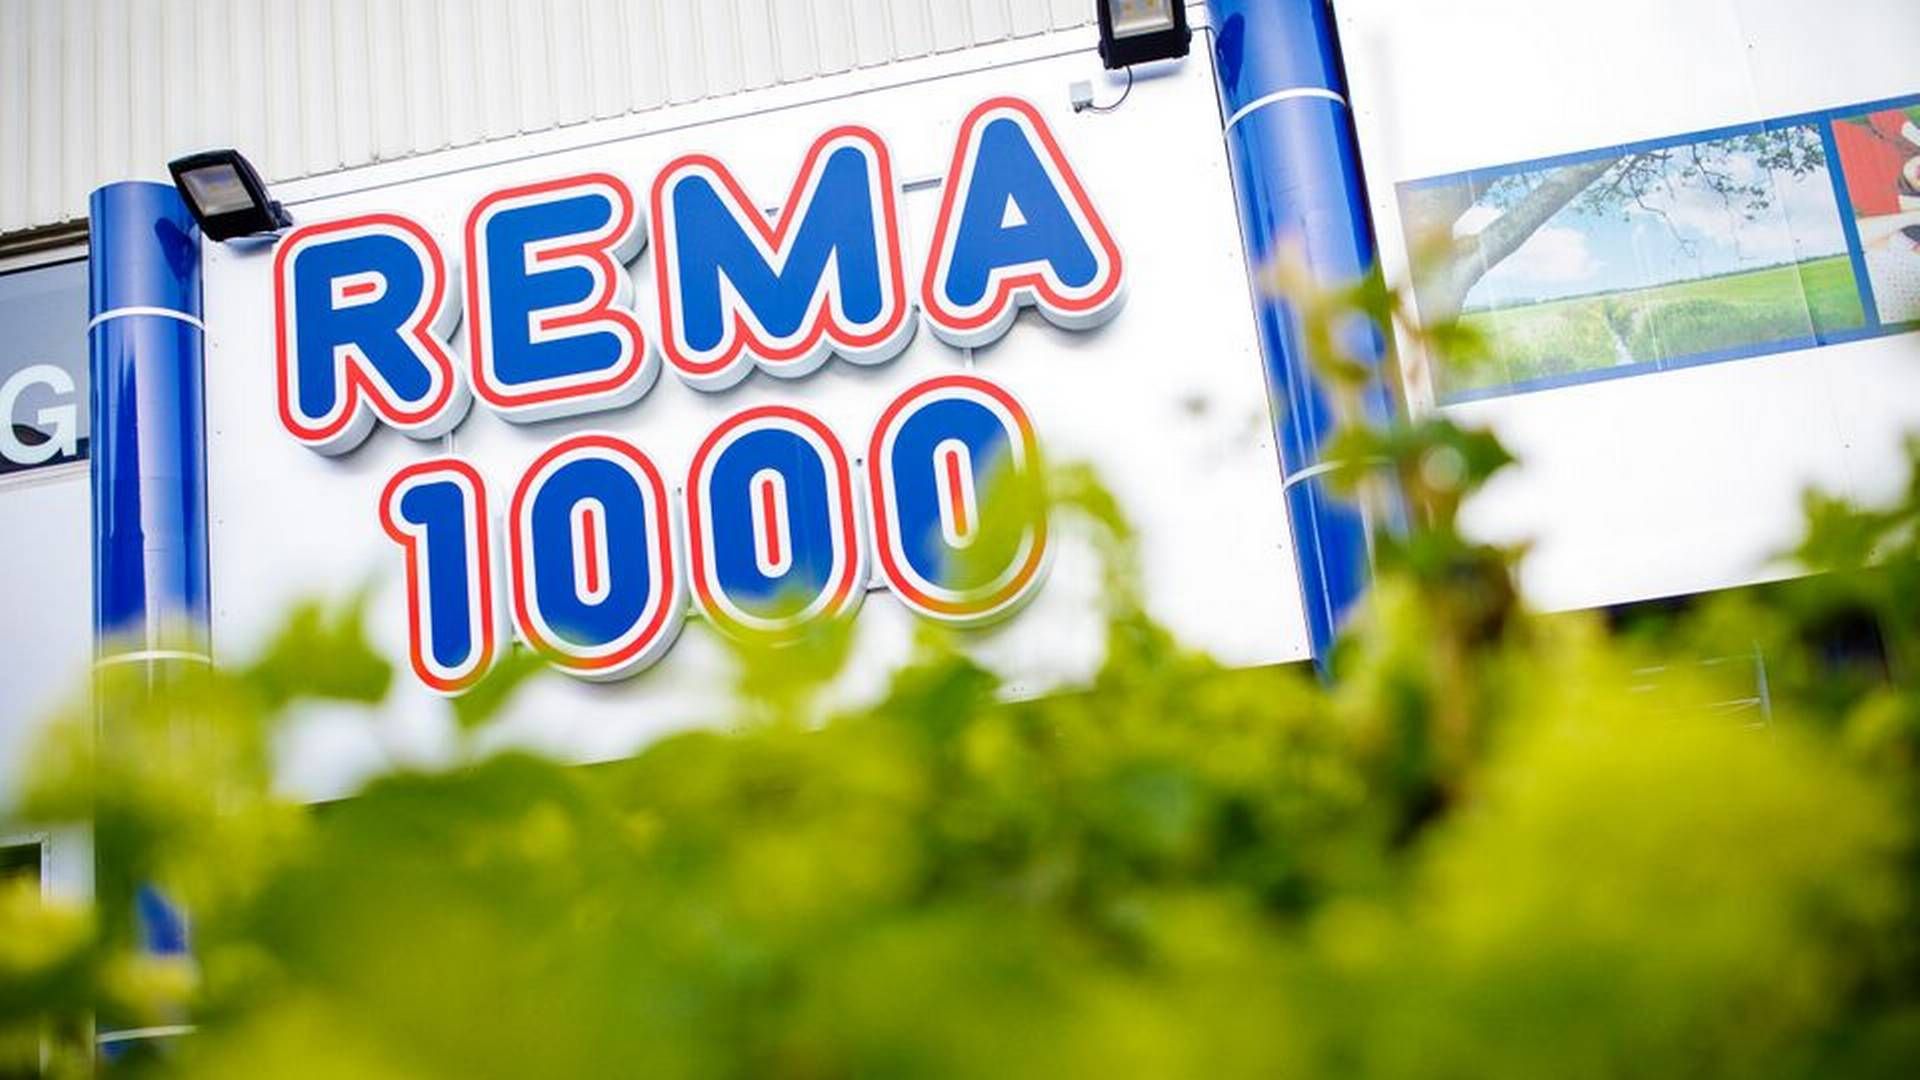 Rema 1000 kommer fortsat til at have butikker i de forskellige ejendomme, dog som lejer frem for ejer. | Foto: Rema 1000/pr